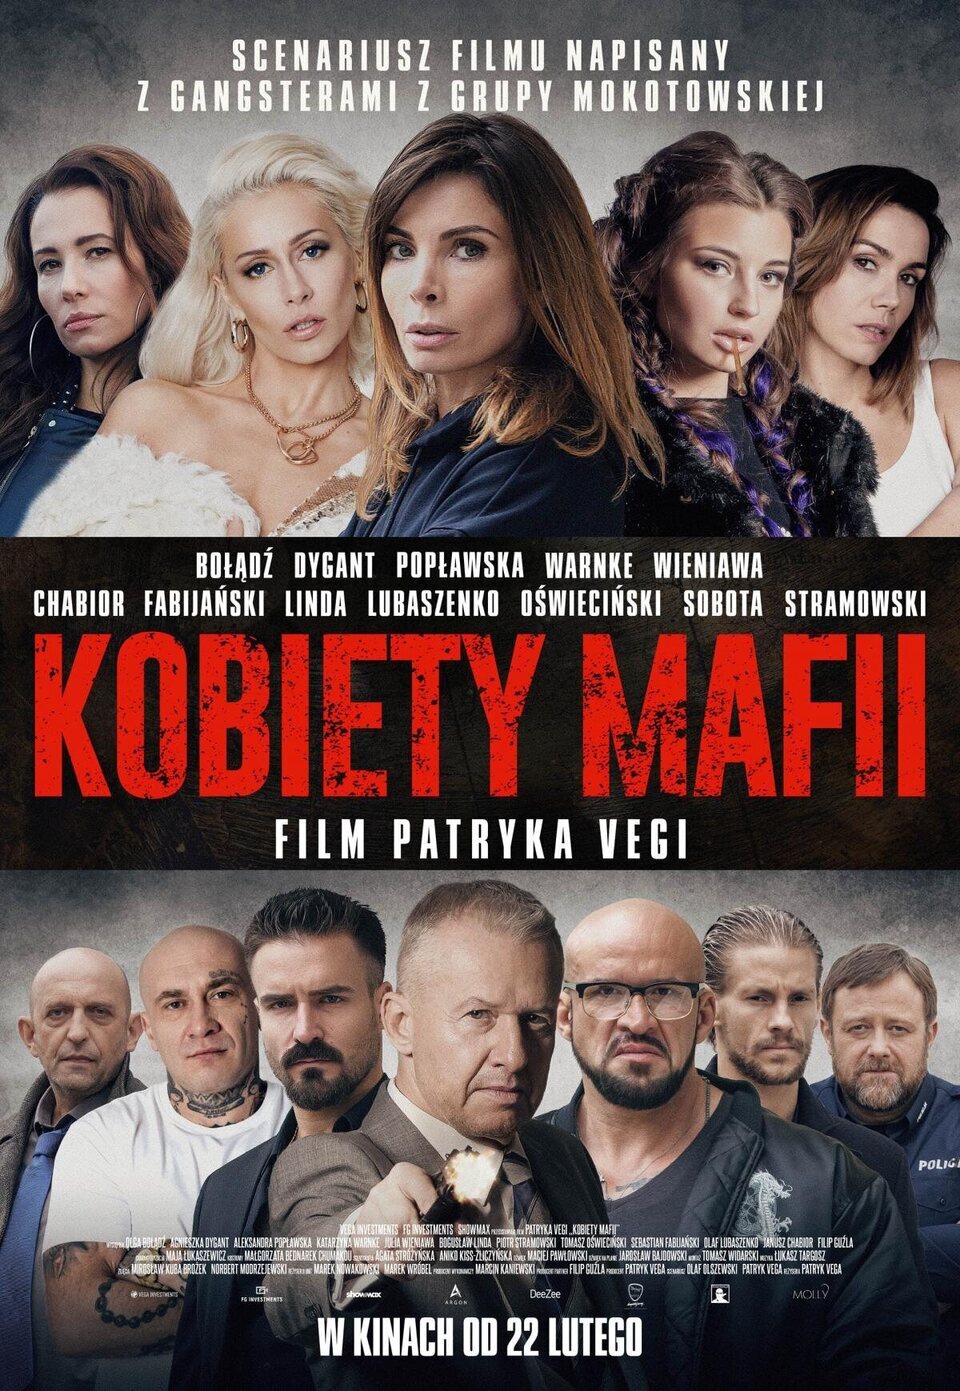 Poster of Kobietii Mafii - Polonia